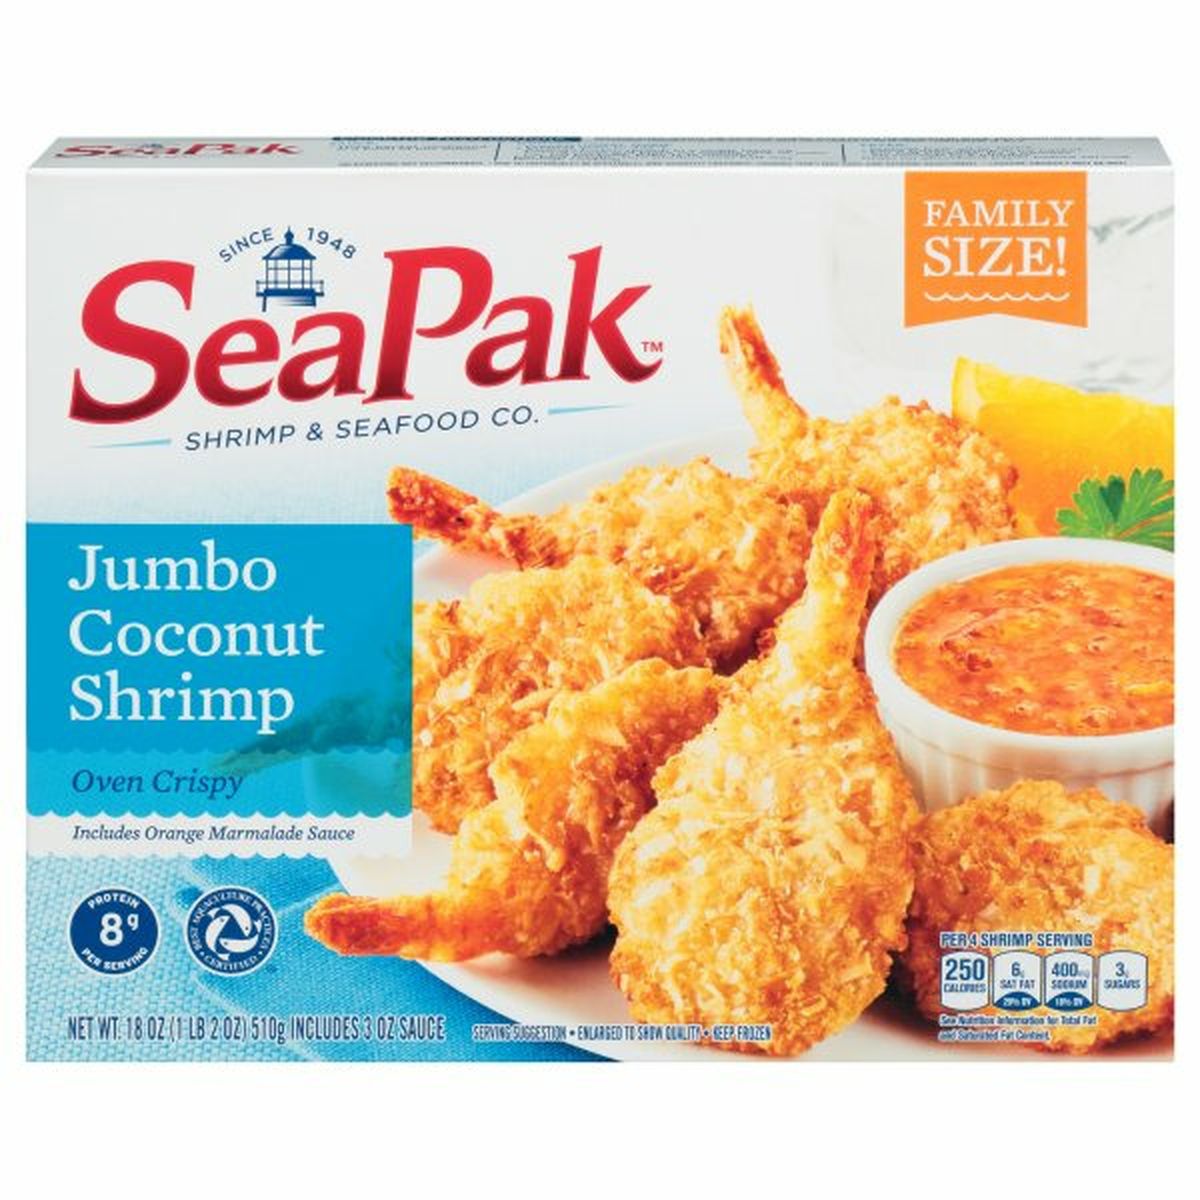 Calories in SeaPak Shrimp, Coconut, Oven Crispy, Jumbo, Family Size